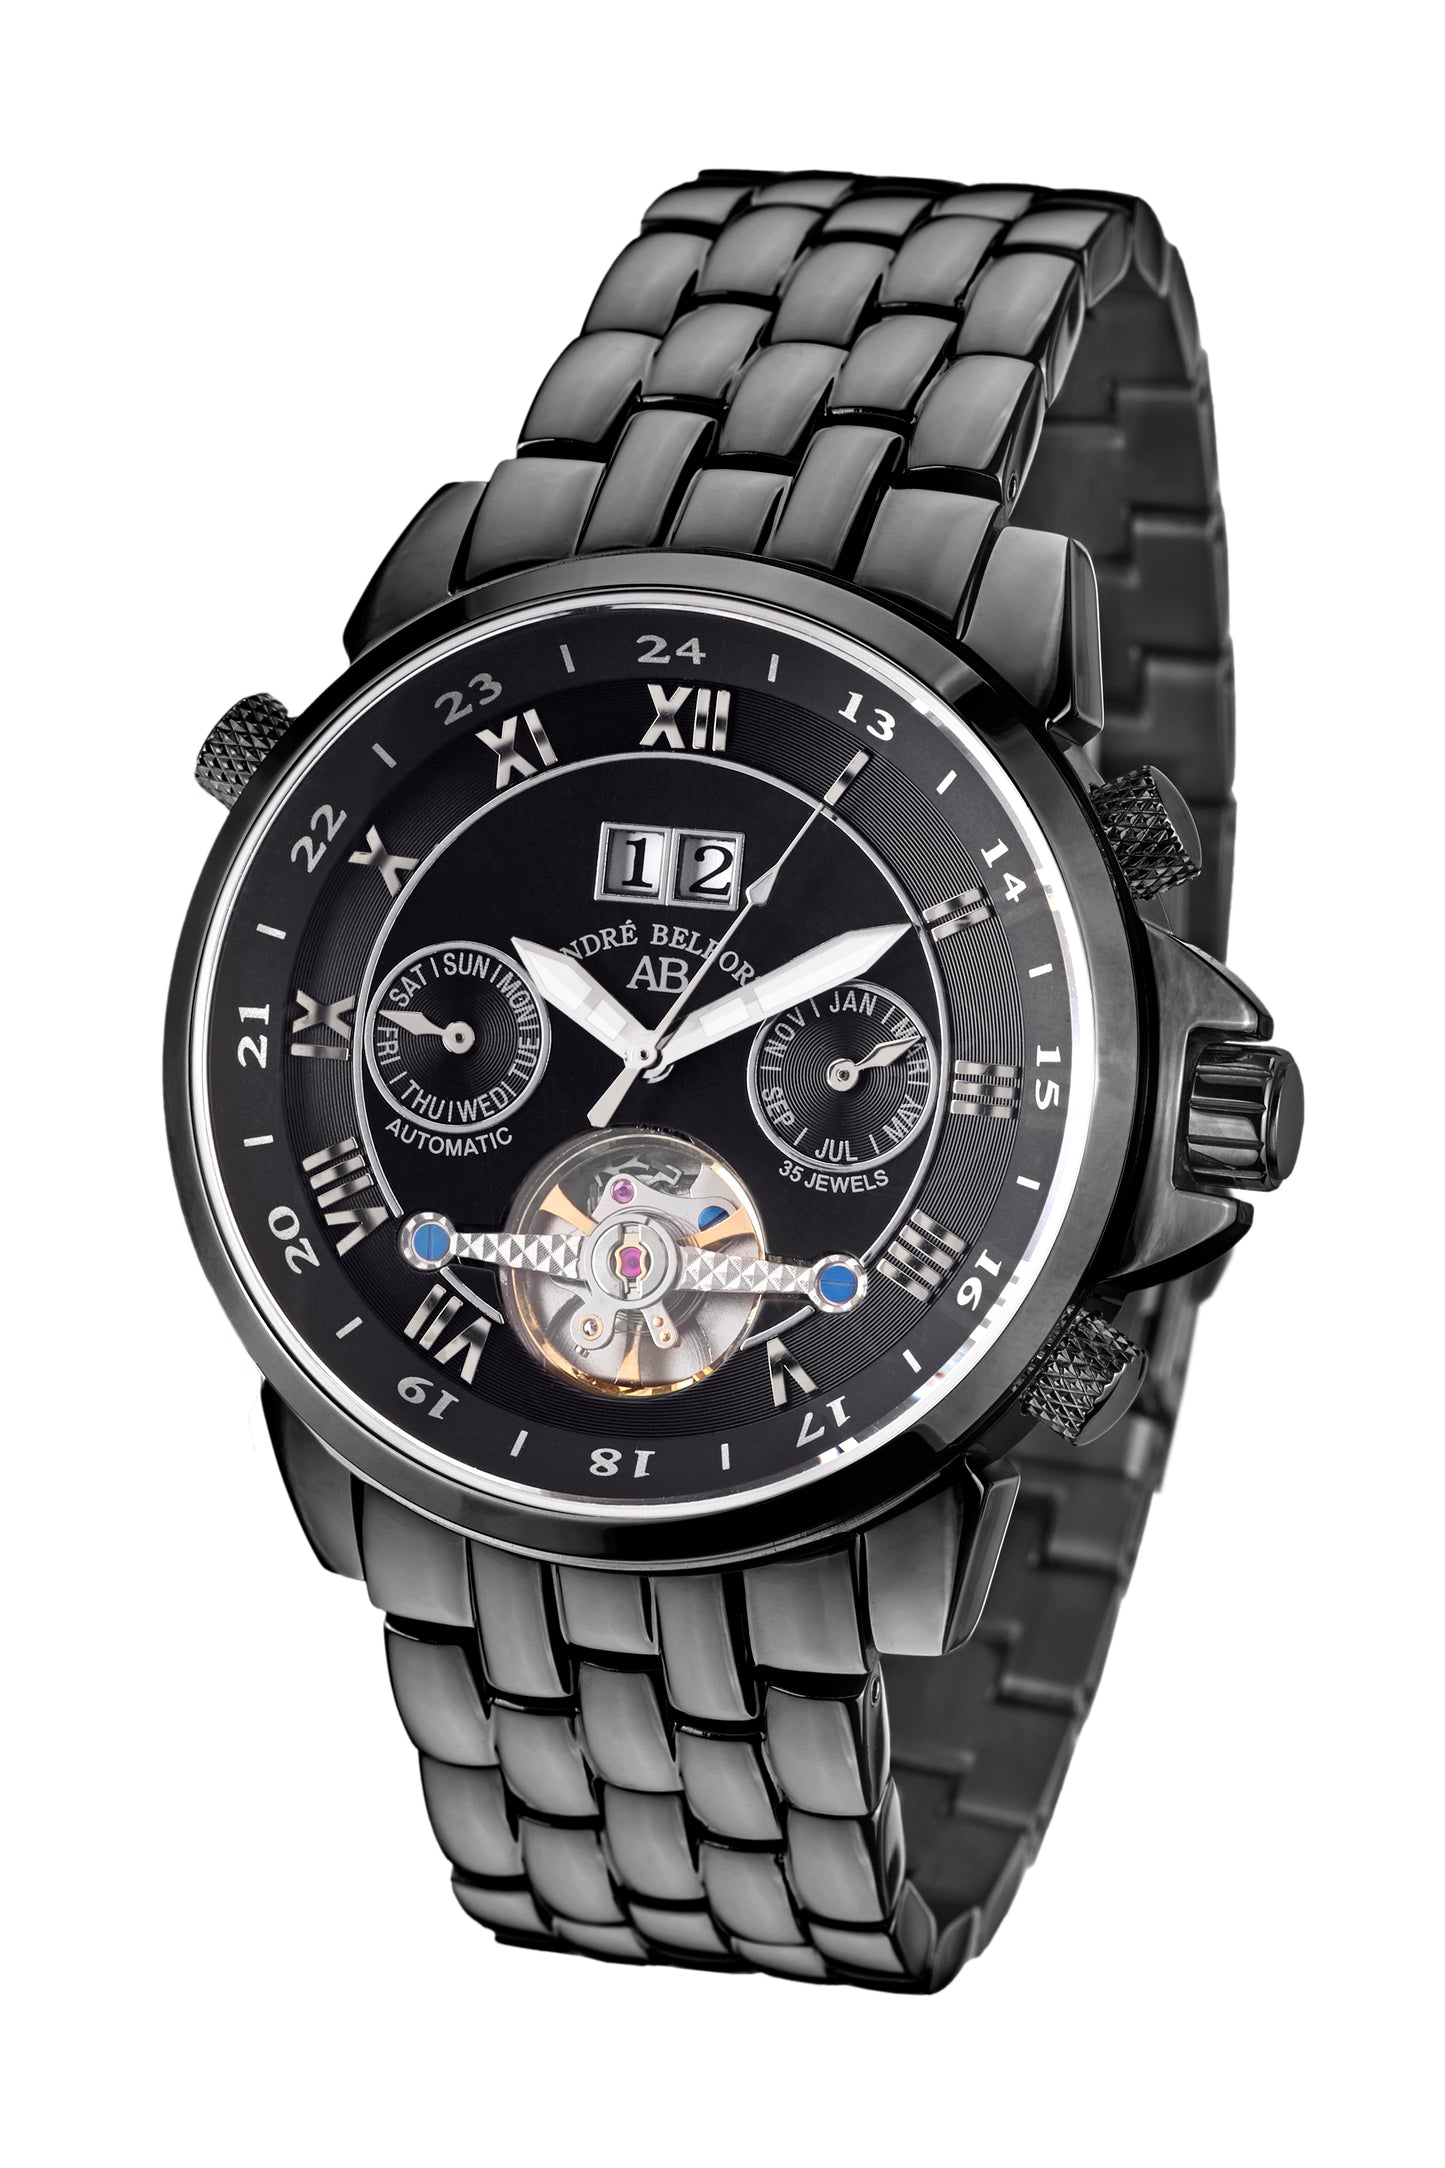 Automatic watches — Étoile Polaire — André Belfort — IP black